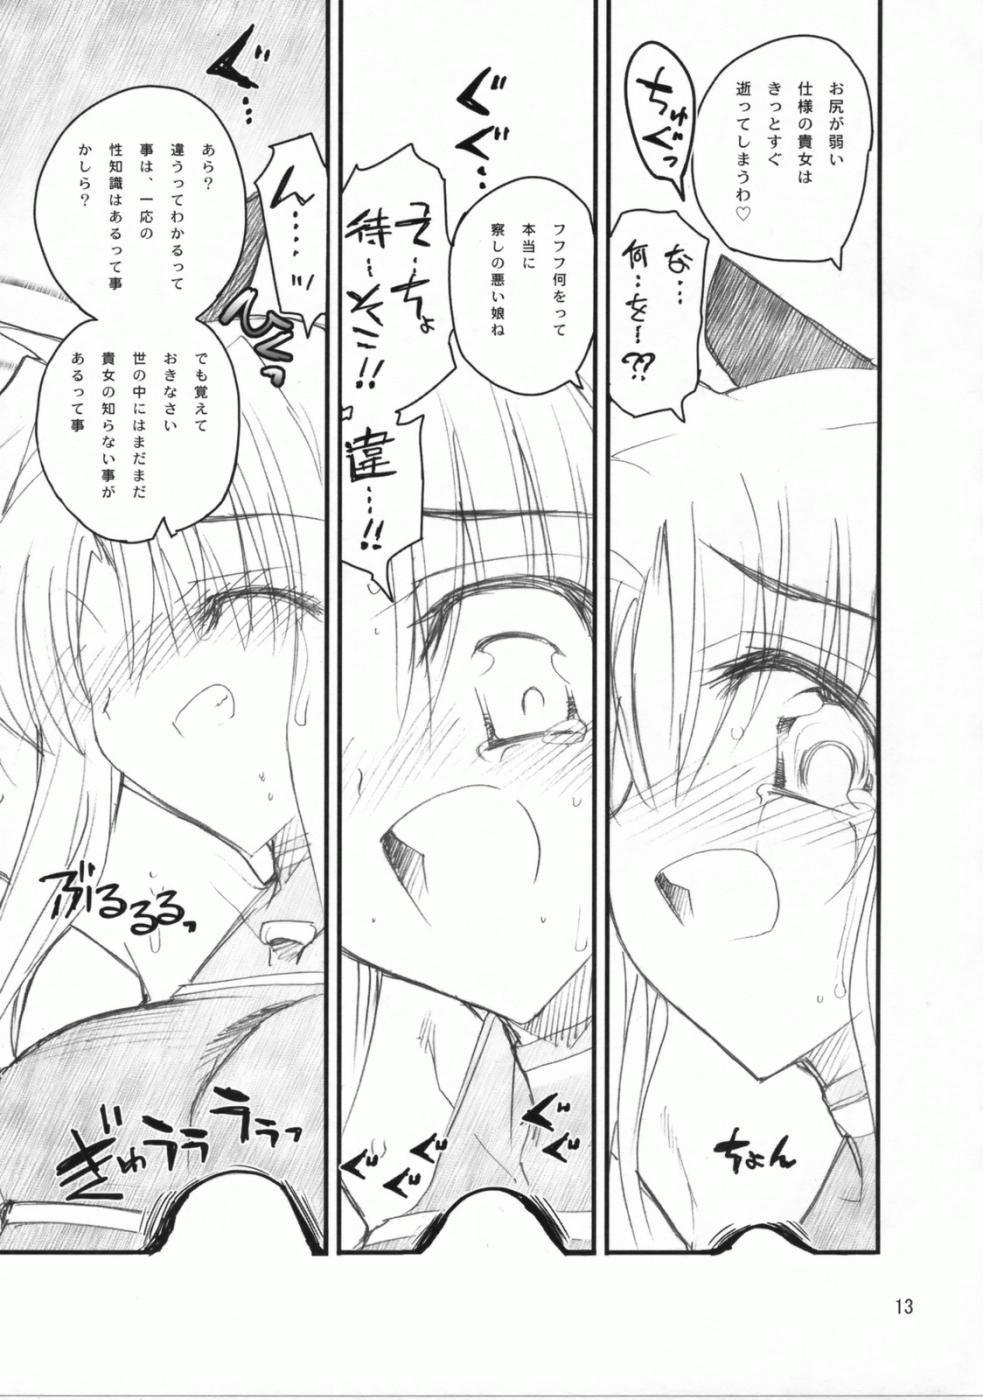 Spreading Fate-san Mae kara Ushiro kara - Mahou shoujo lyrical nanoha Stunning - Page 12